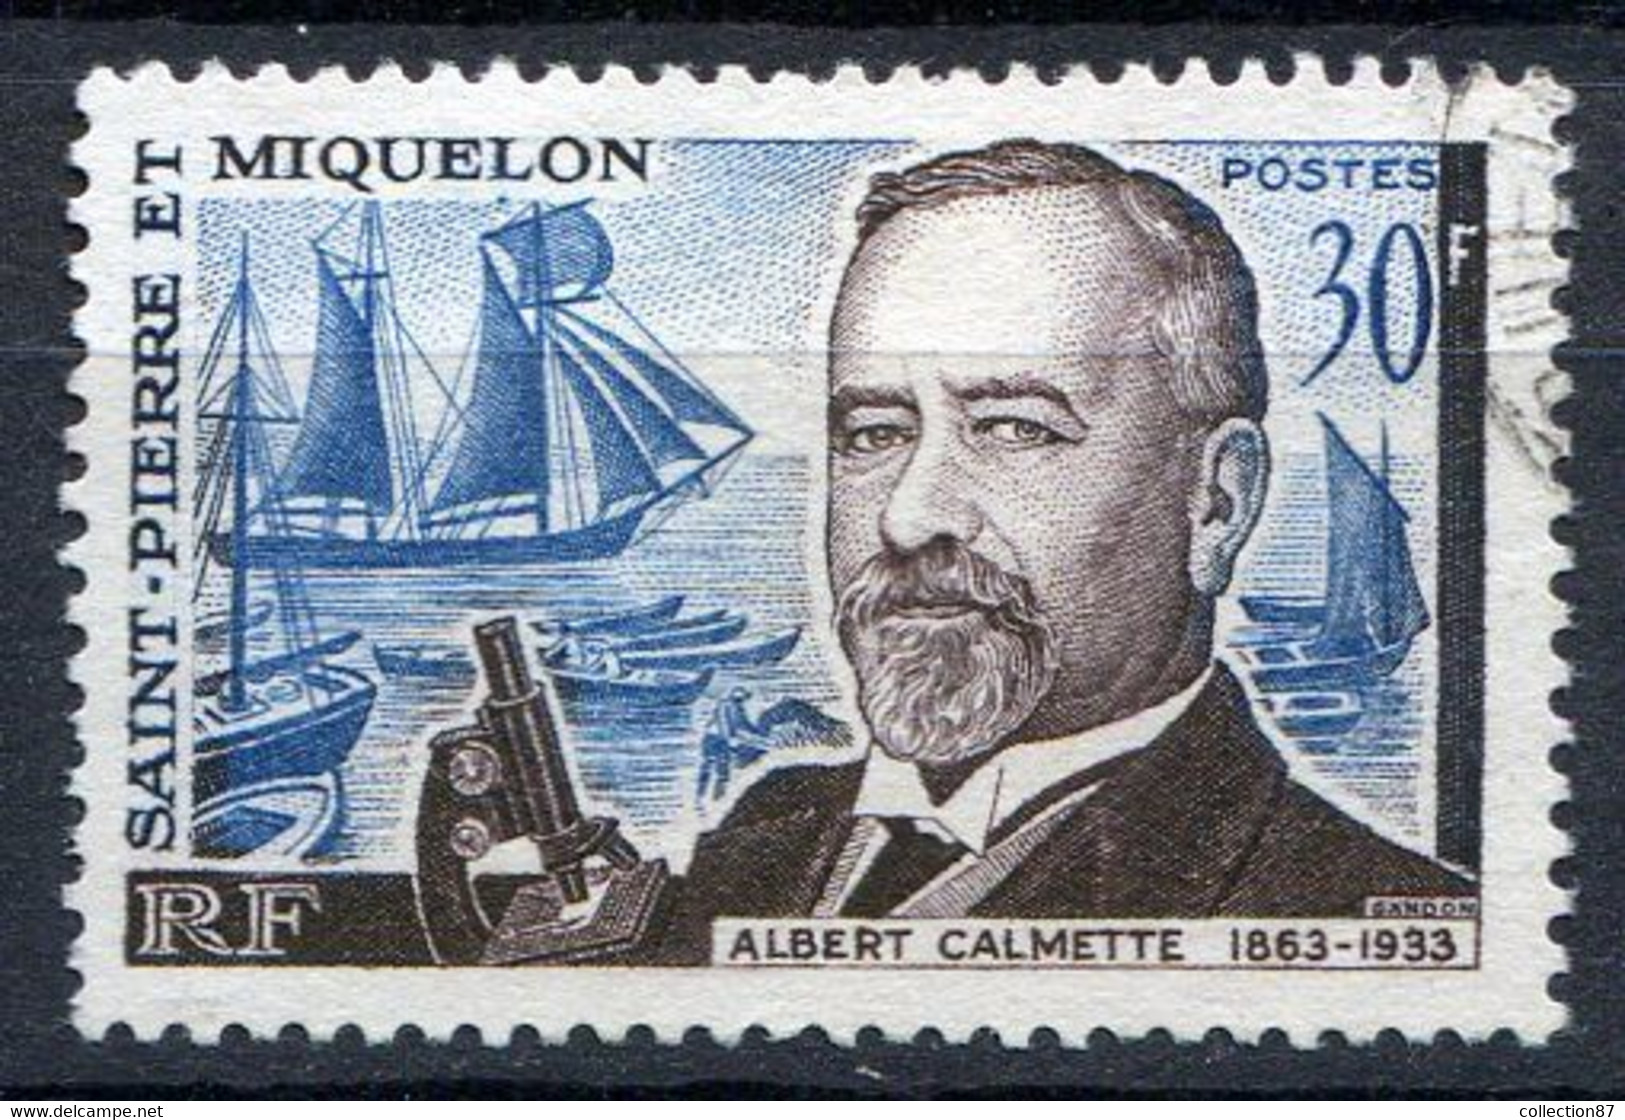 Réf 55 CL2 < -- SAINT PIERRE Et MIQUELON < Yvert N° 368 Ø < Oblitéré Ø Used < Docteur Albert Calmette - Used Stamps